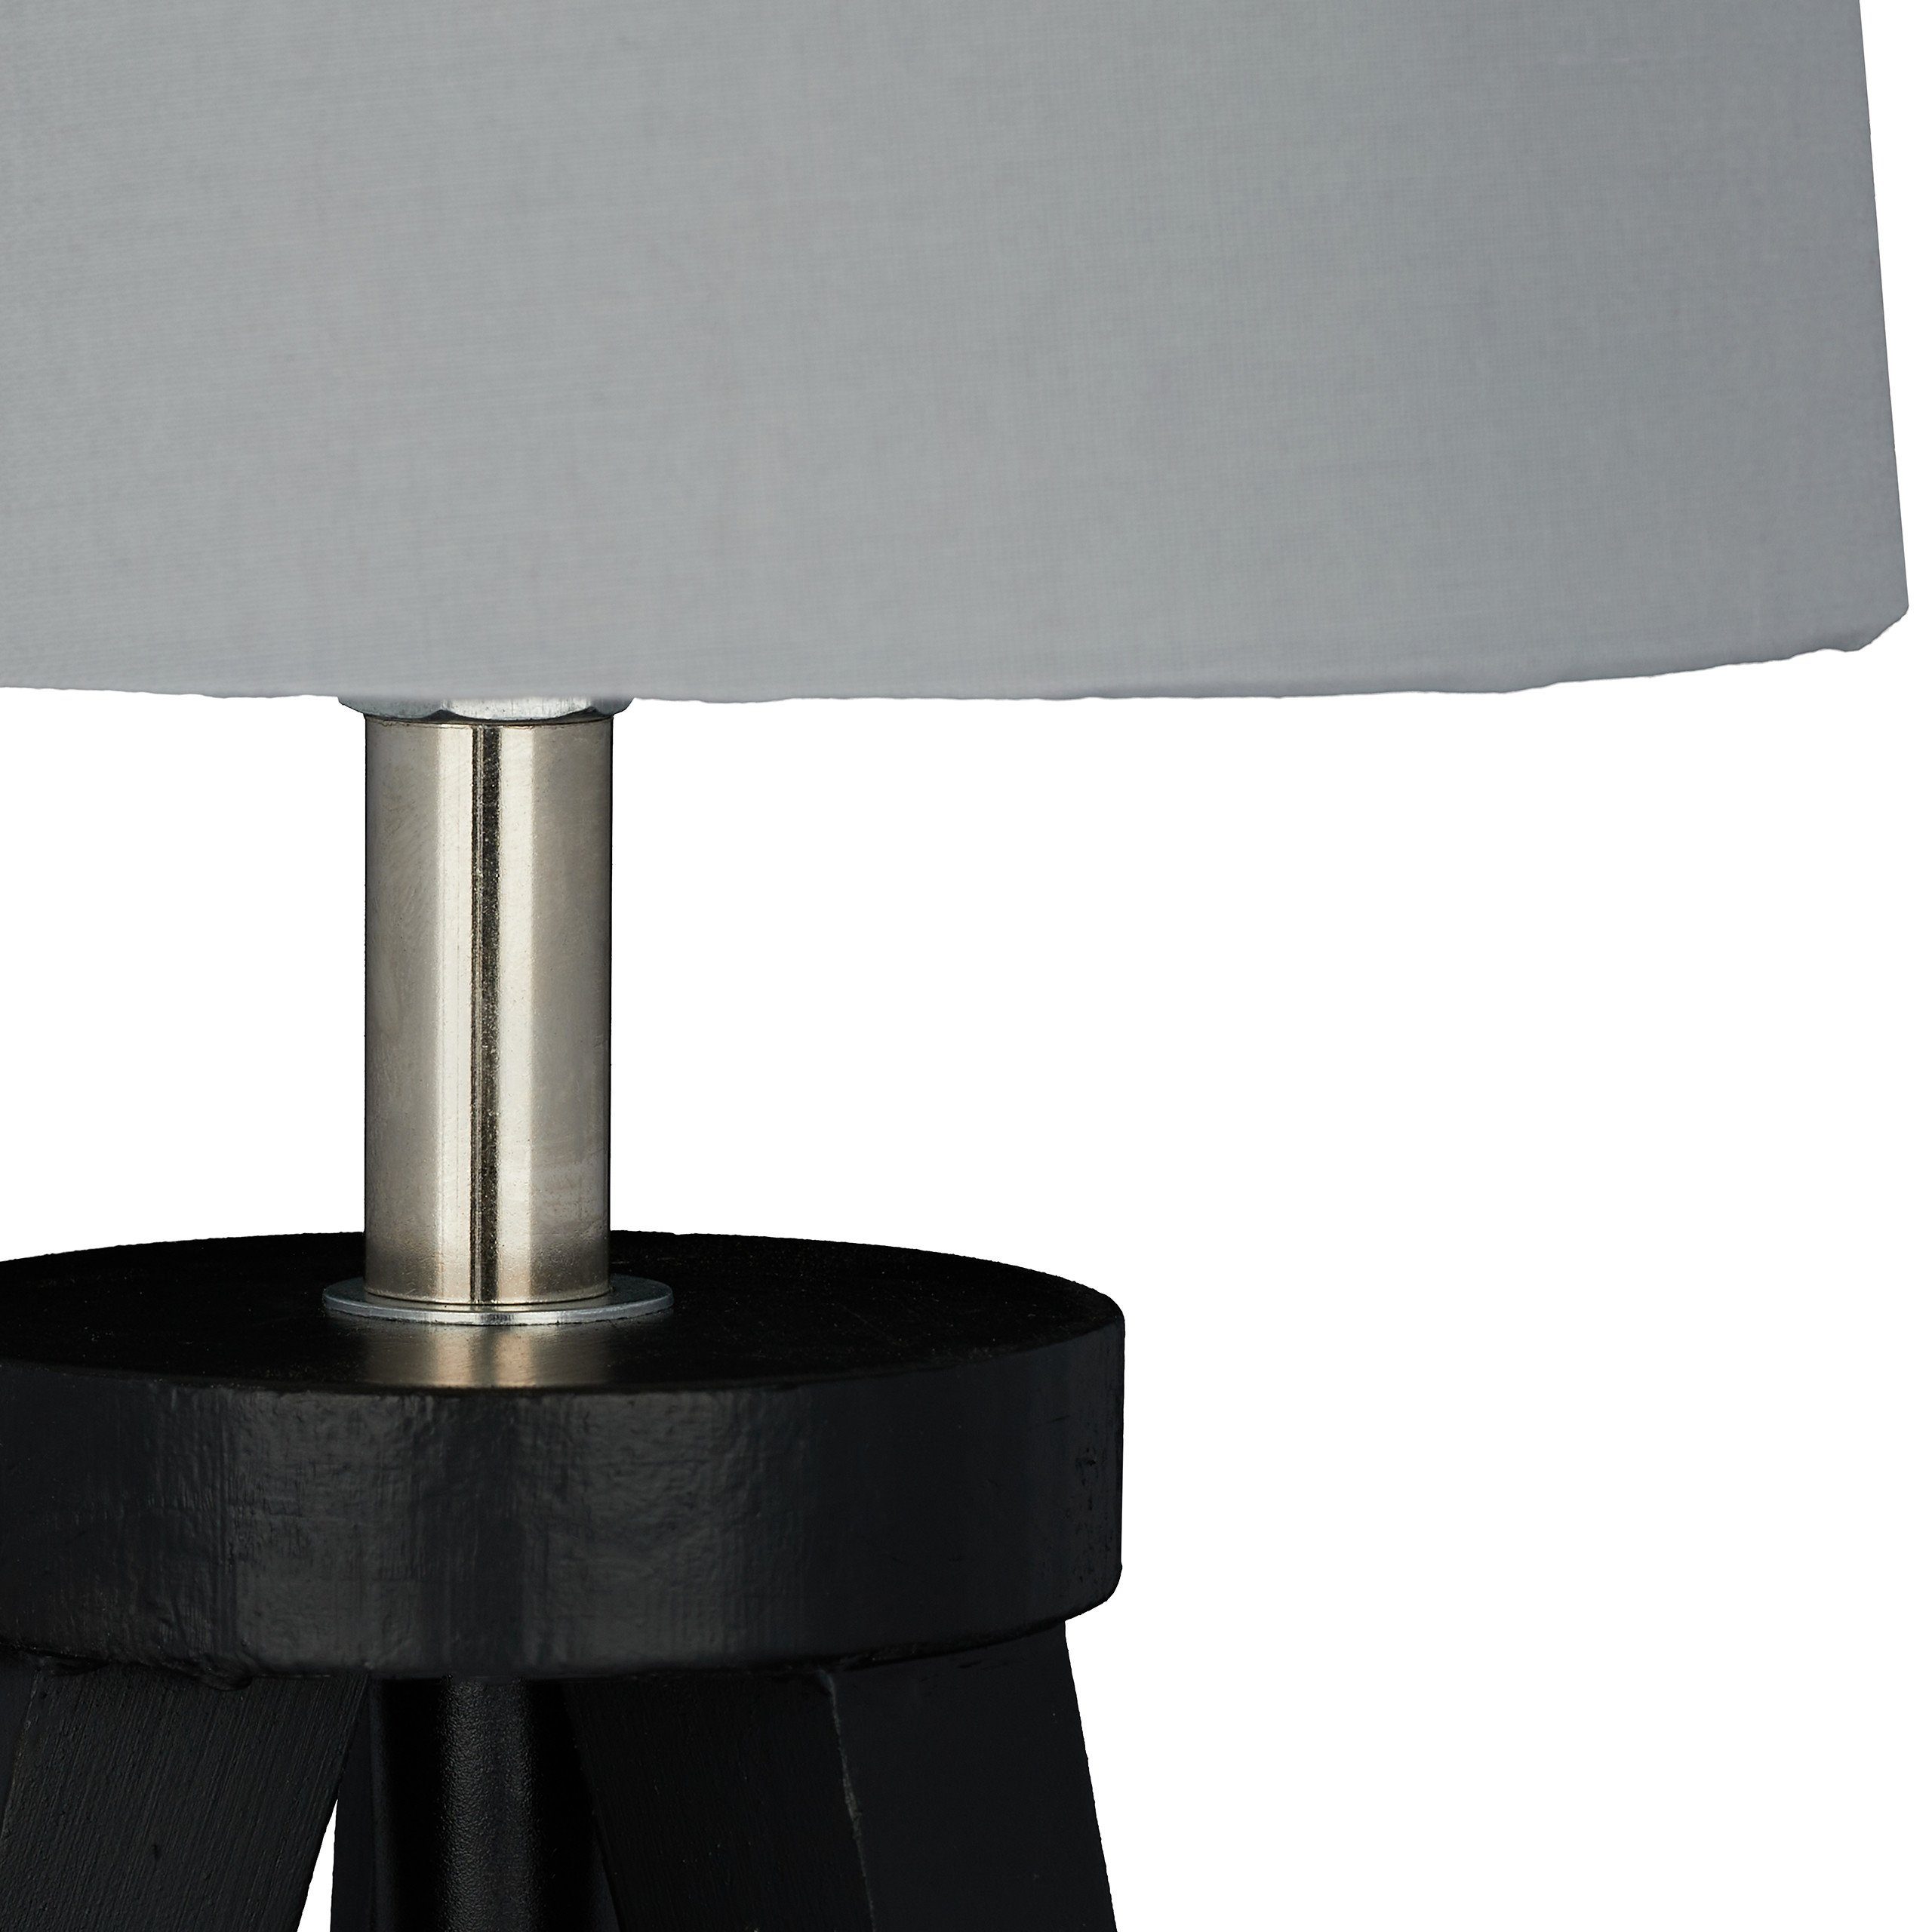 Tischlampe Nachttischlampe Dreibein Schwarz/Grau relaxdays